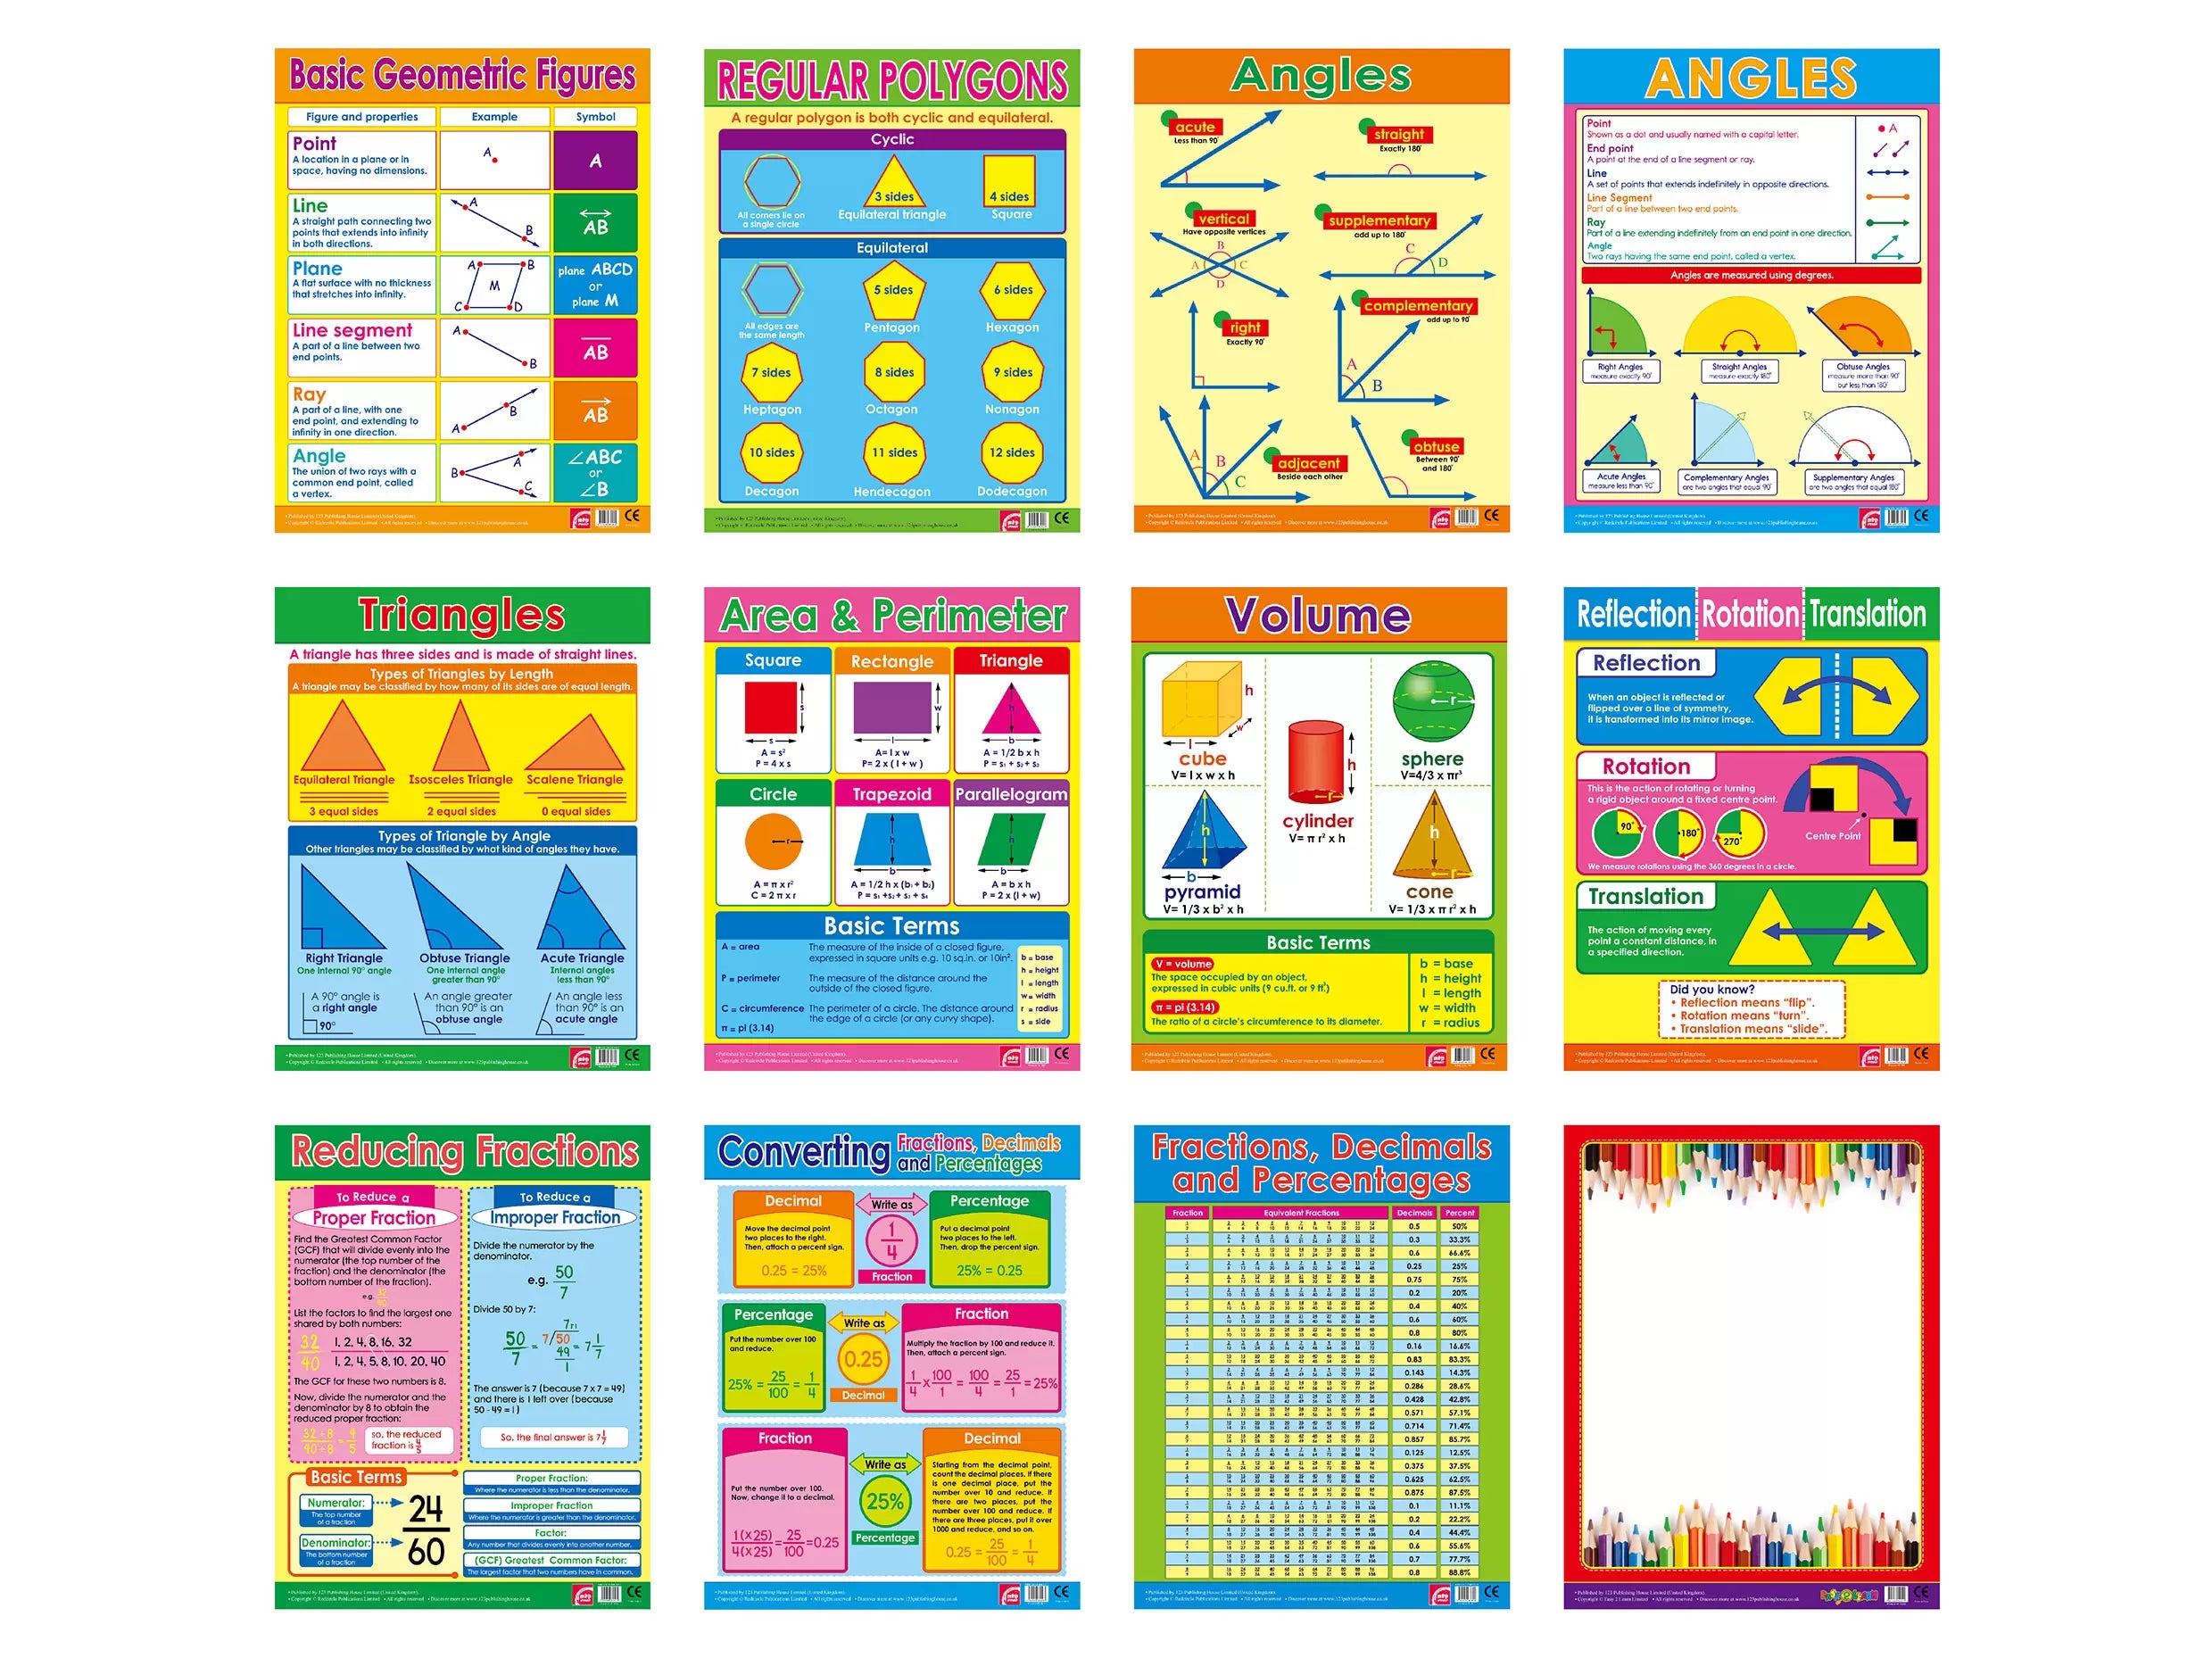 الهندسة والكسور والكسور العشرية والنسبة المئوية (12 مخططًا حائطيًا) - حزمة مخططات حائطية تعليمية باللغة الإنجليزية